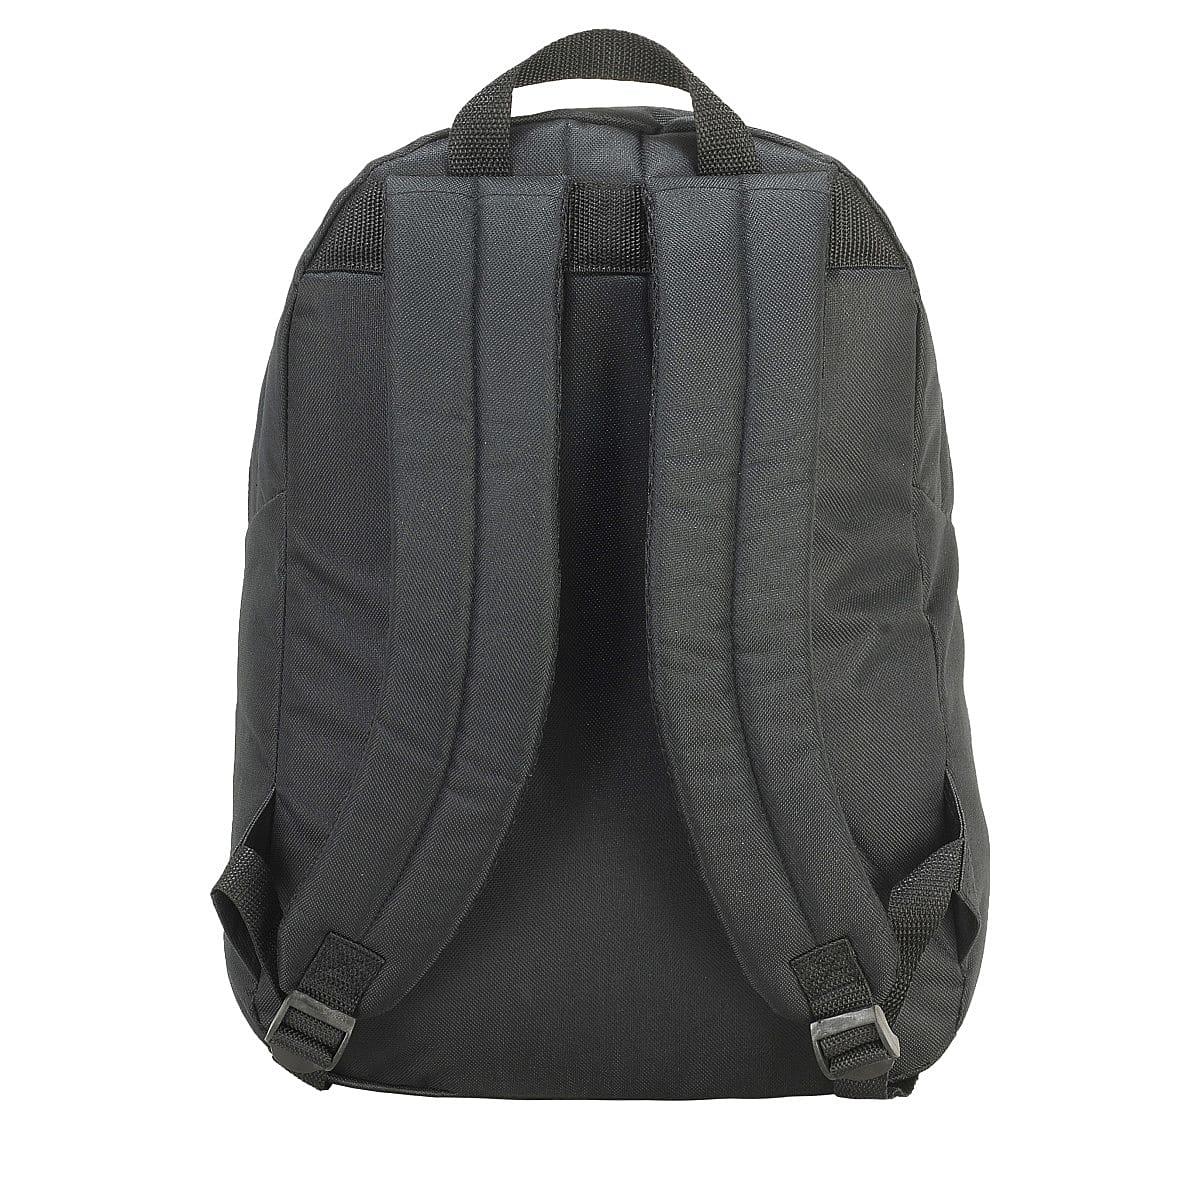 SH7667 Shugon Milan Backpack Bag Walking Rucksack Large Main Compartment Zips 